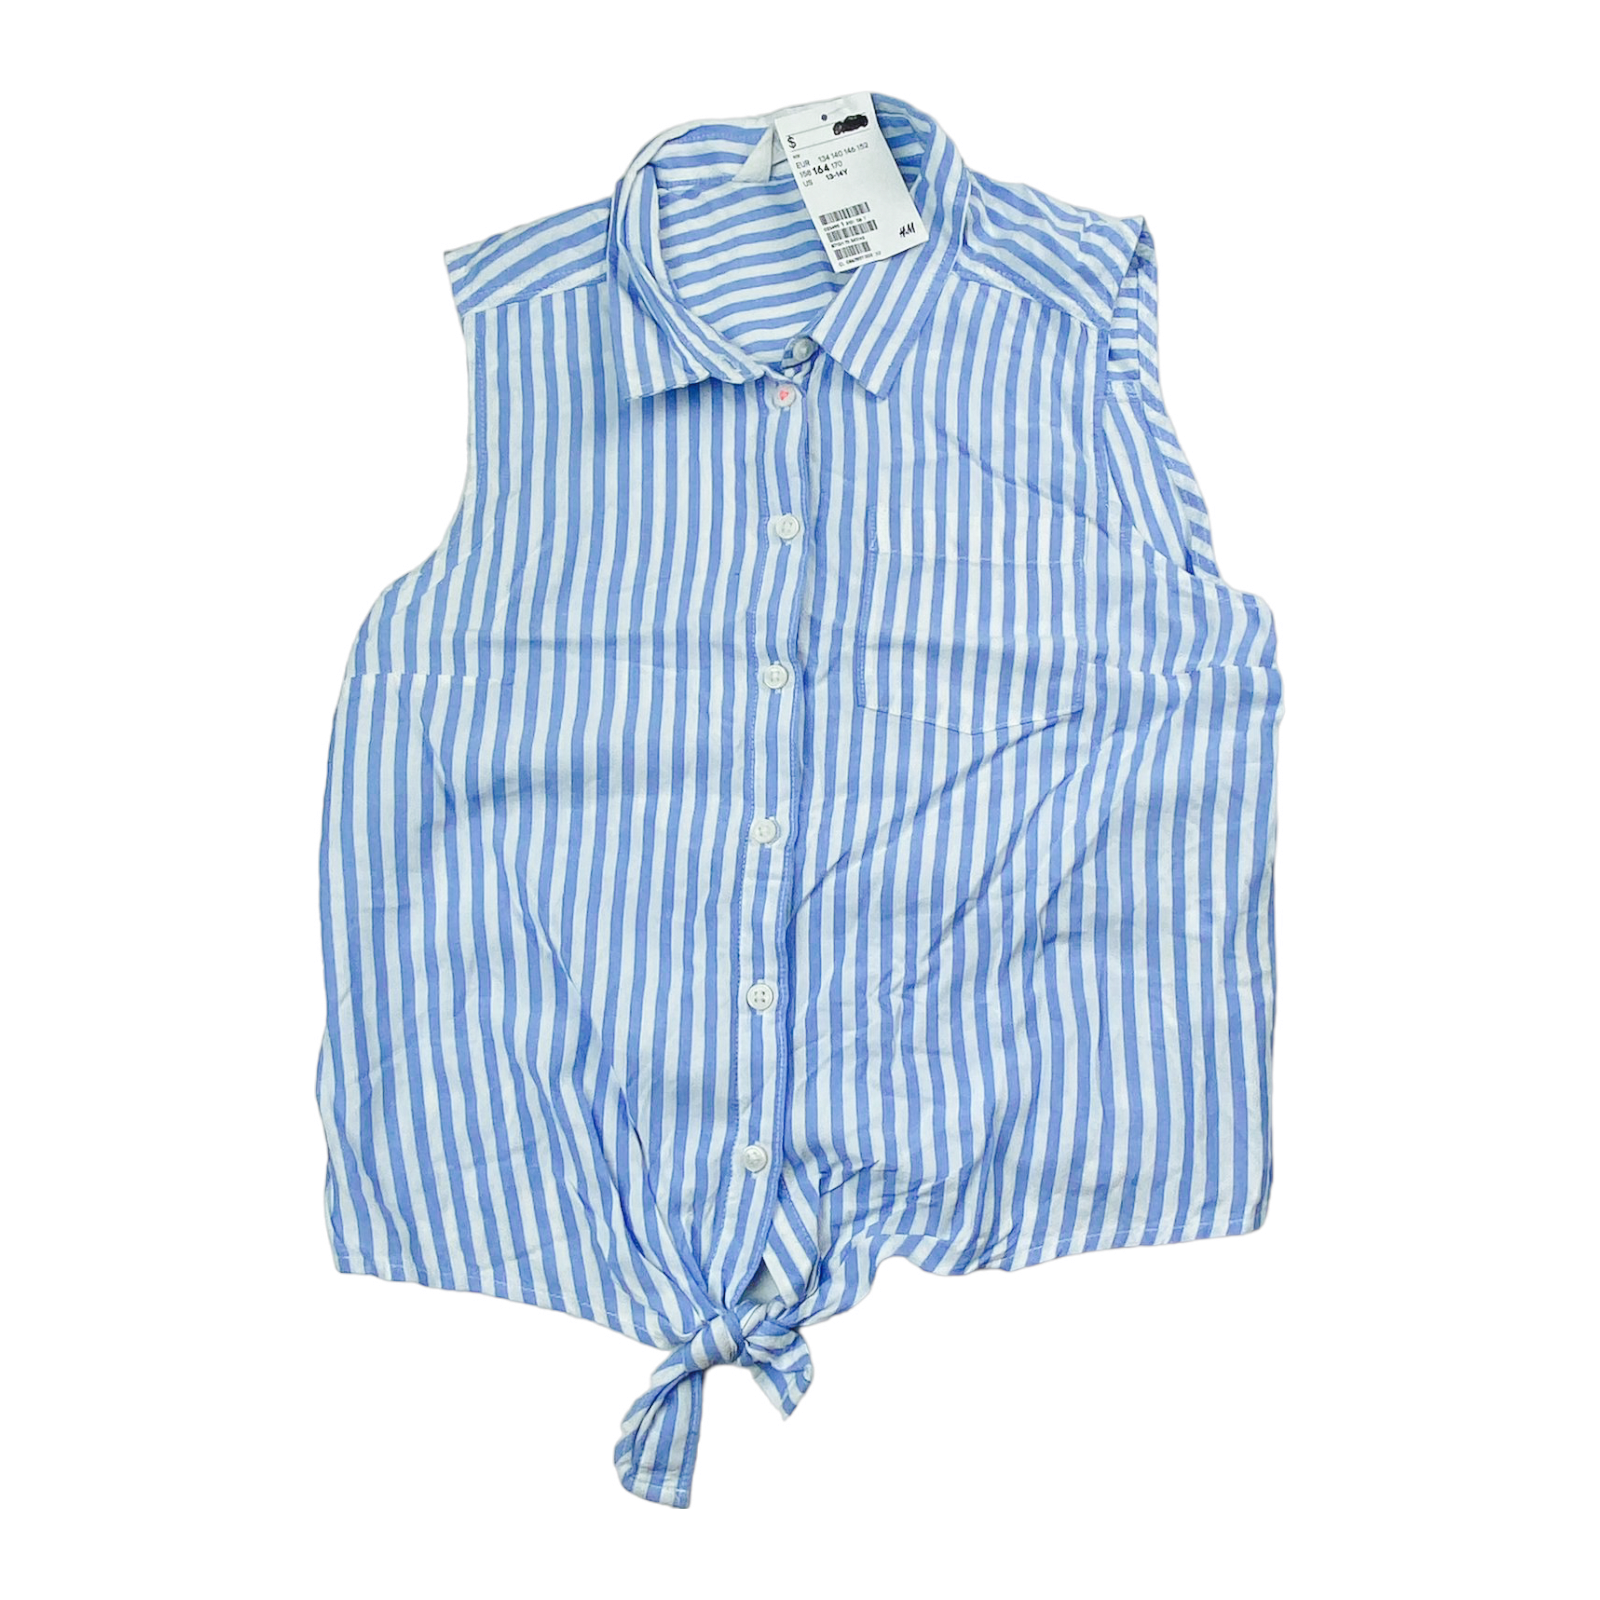 Blusa blanca con rayas azules Nueva con etiqueta Talla 13-14 años